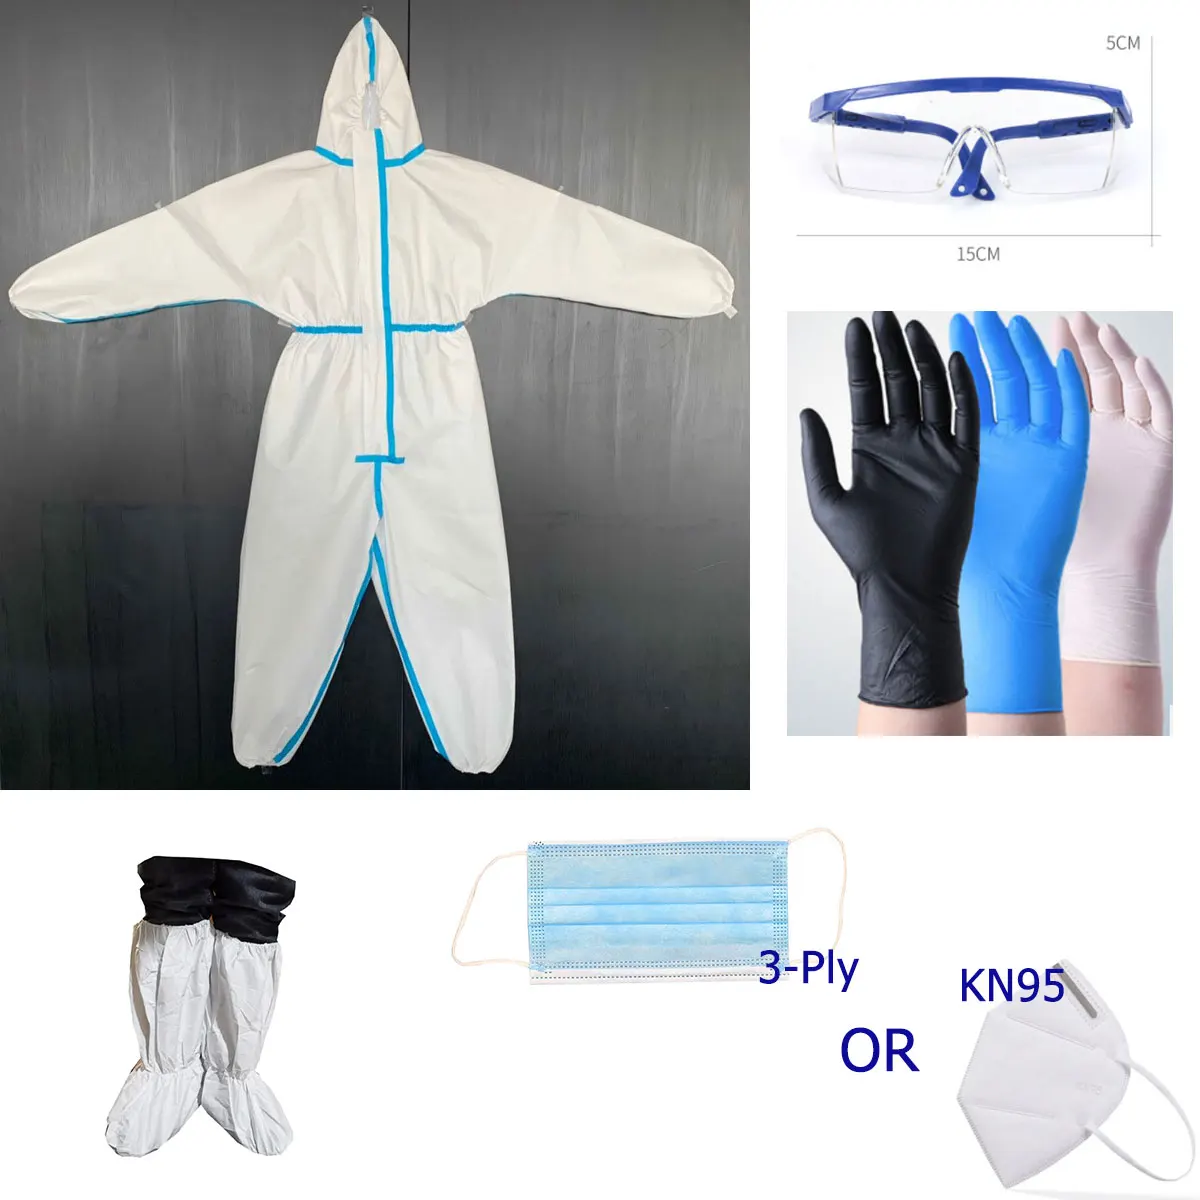 PPE kit.jpg